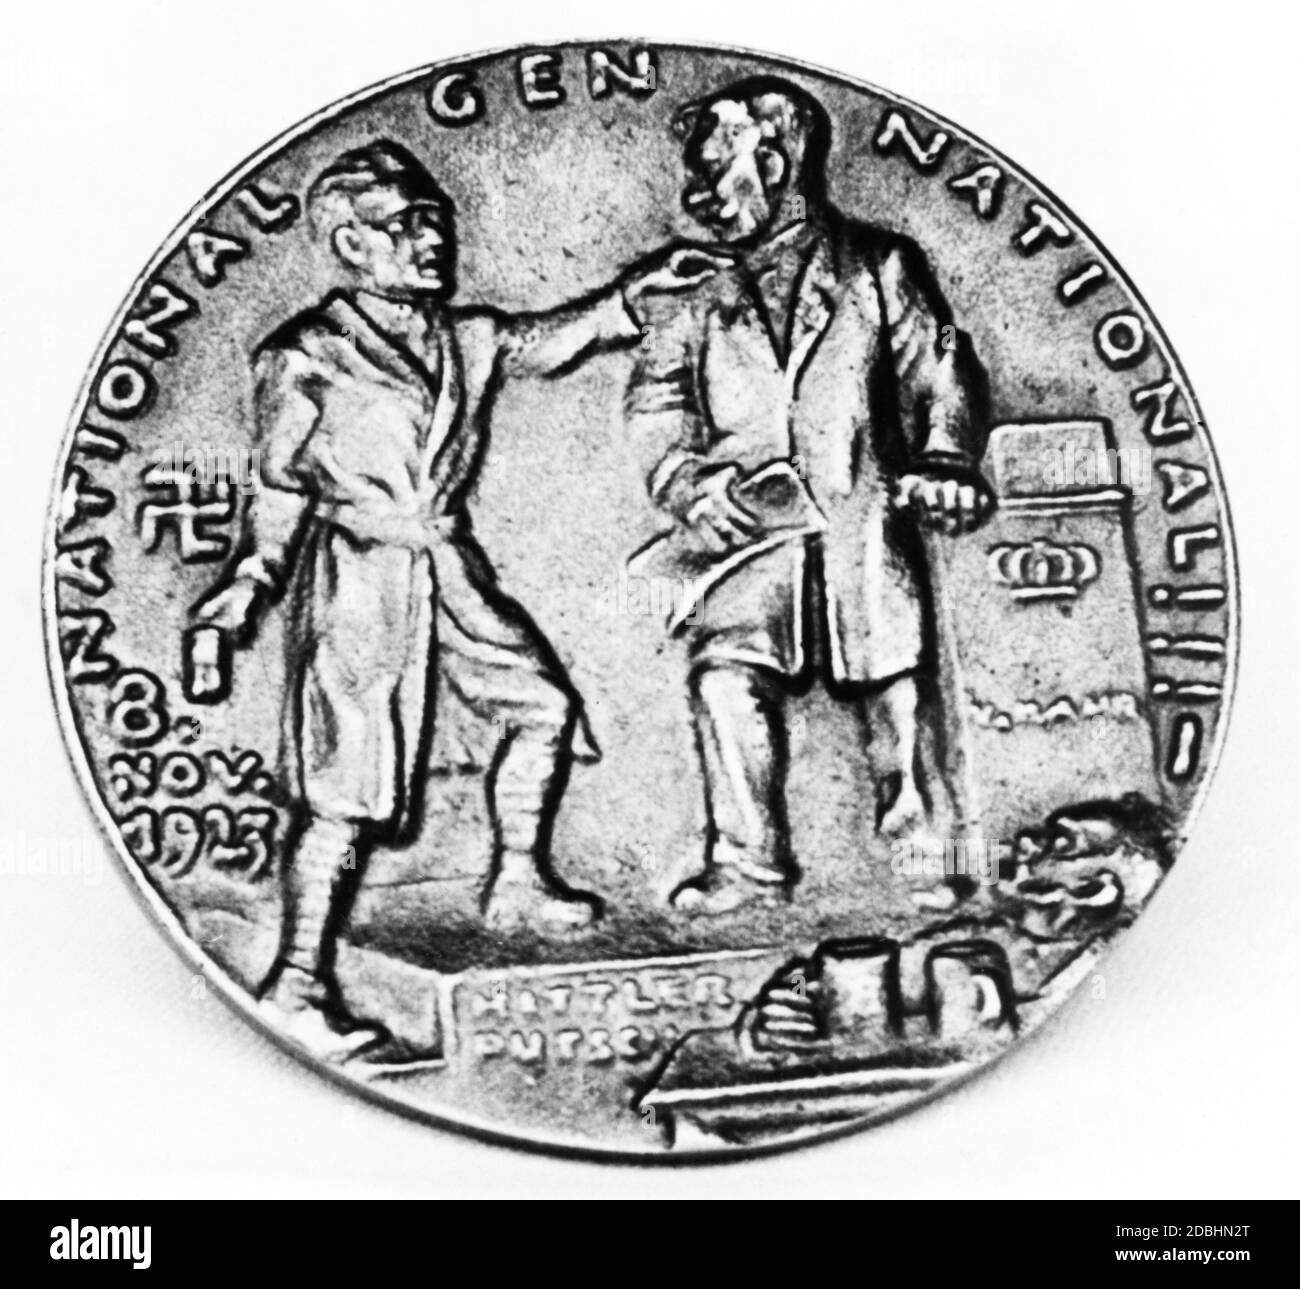 Il commerciante di monete Karl Kress distrusse tutti i mintages raggiungibili di questa medaglia dopo che la NSDAP è salito al potere nel 1933. La Beer Hall Putsch - Hitler con Kahr nel Buergerbraeukeller - visto come uno spettacolo Punch and Judy. Foto Stock